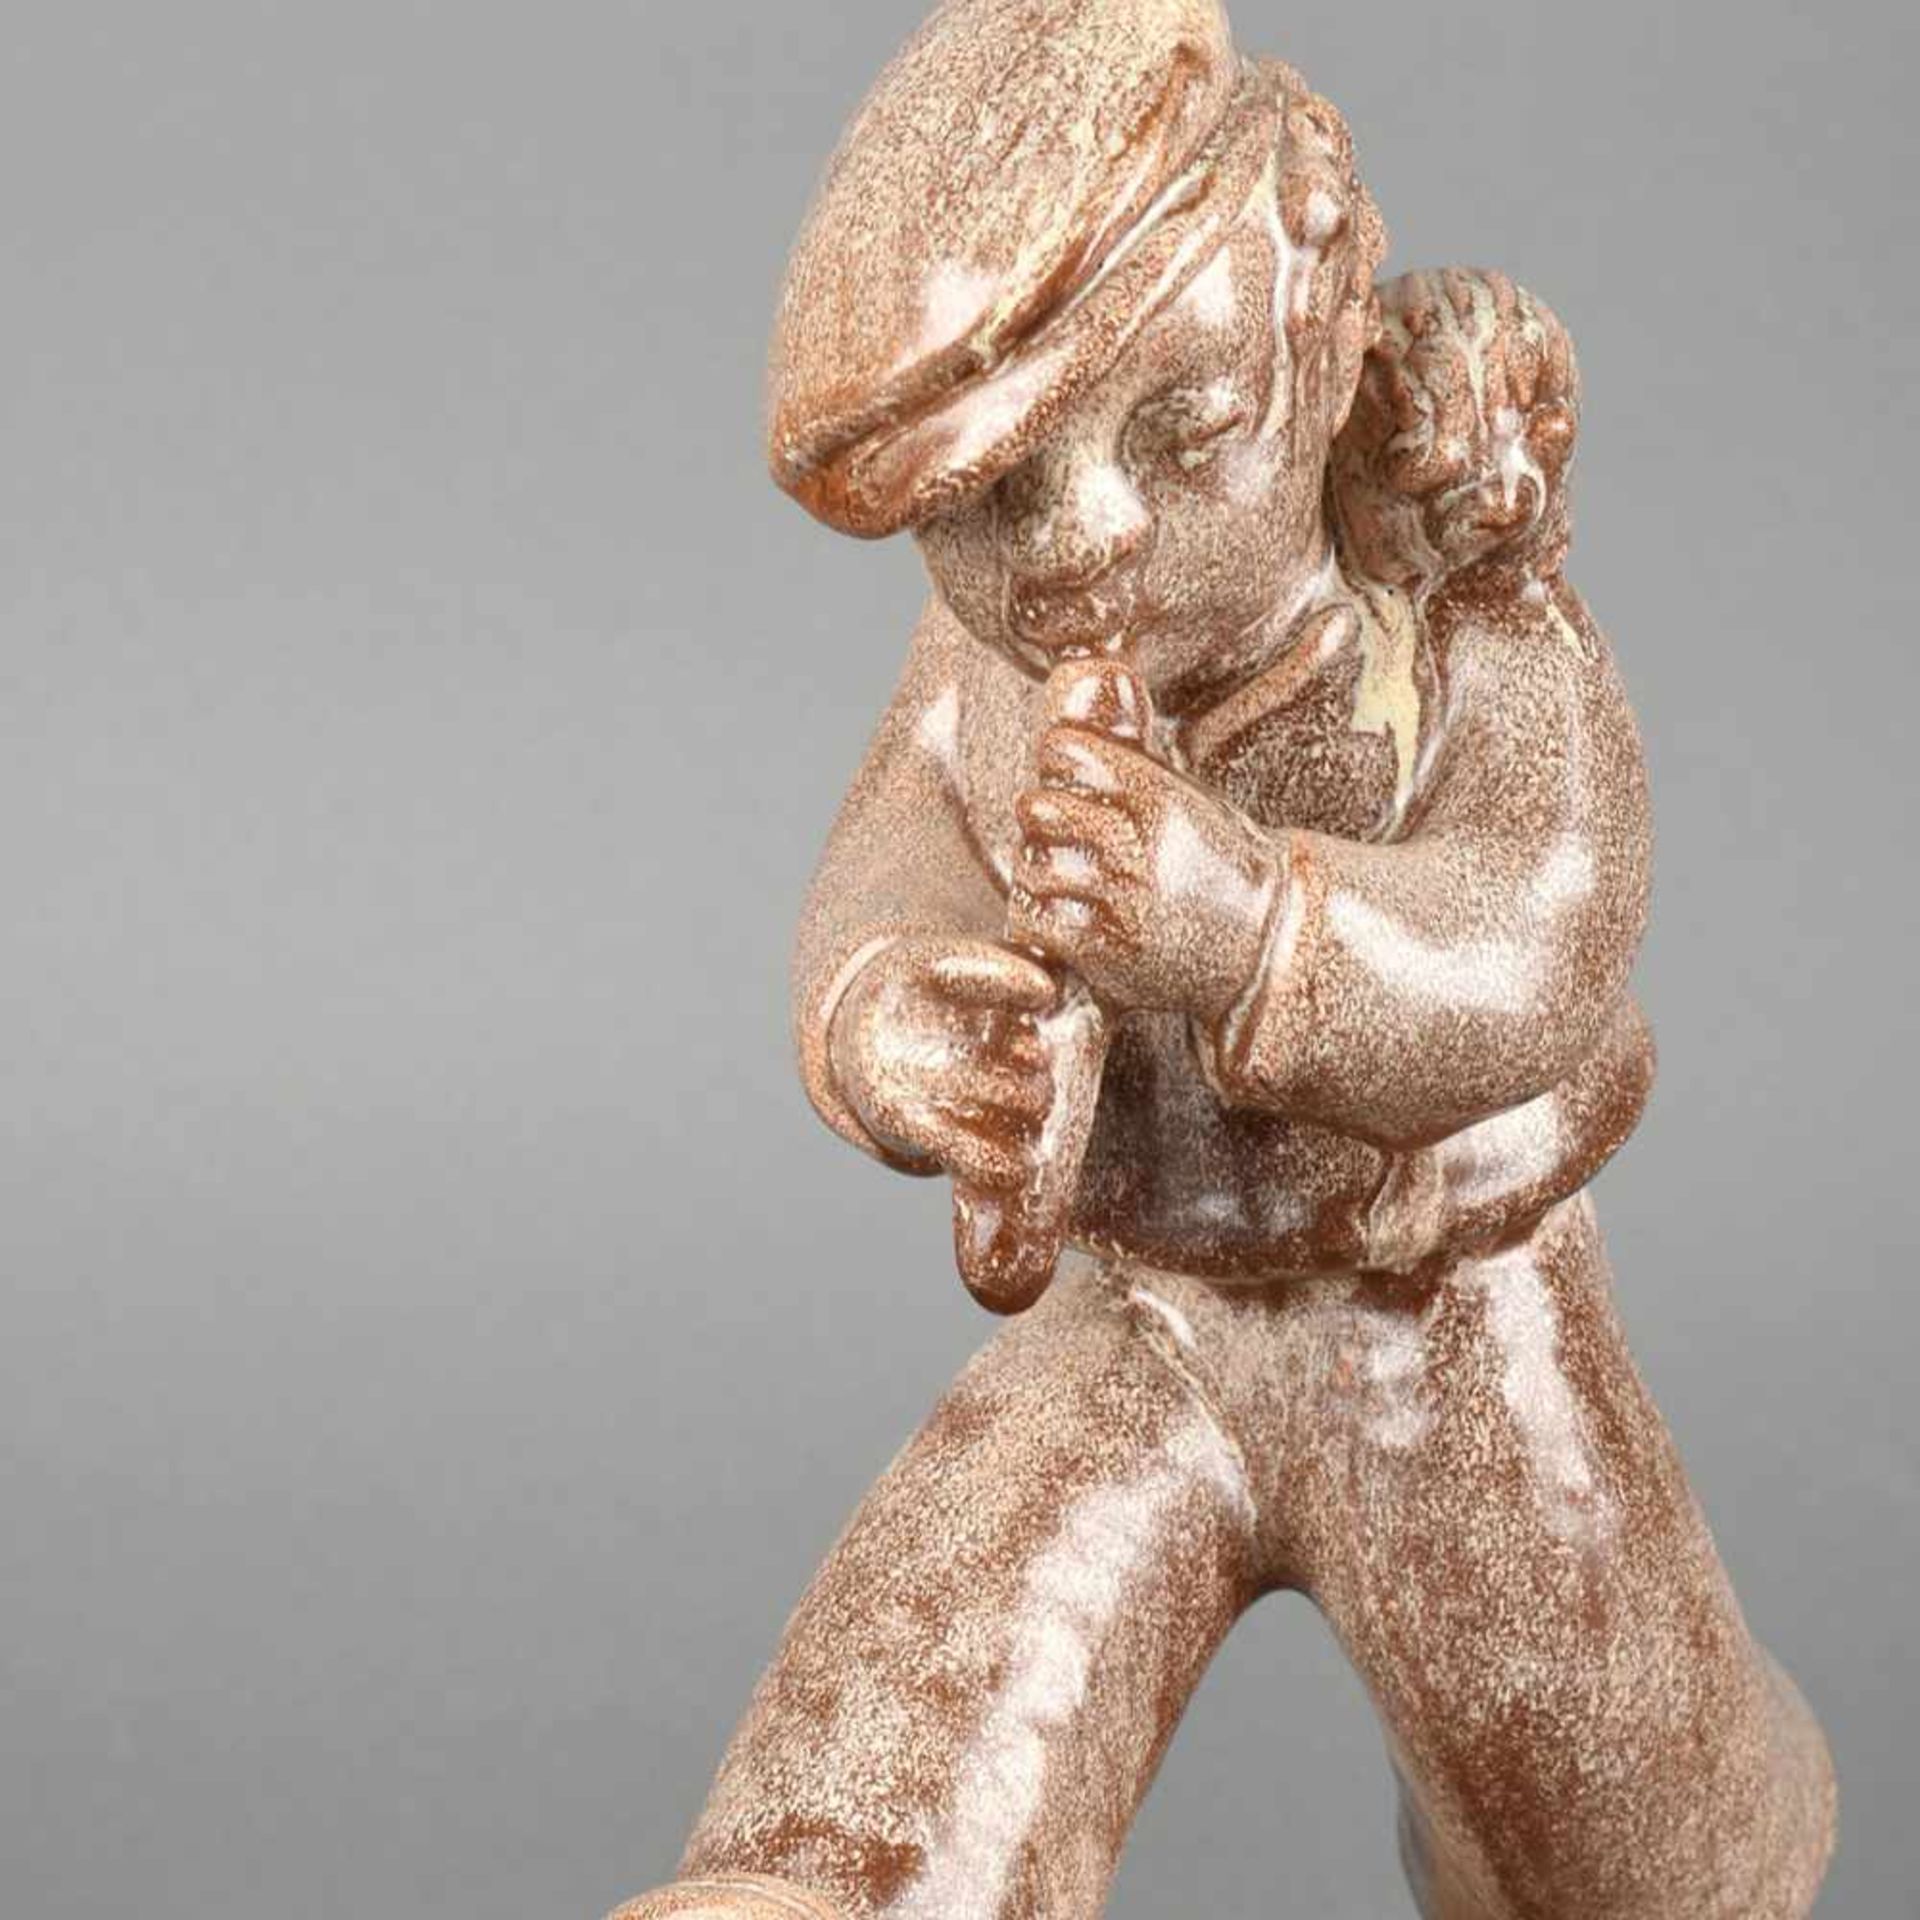 Flötenspieler Hersteller: Mosbacher Keramik (Pressmarke), roter Scherben, flötender Junge in der